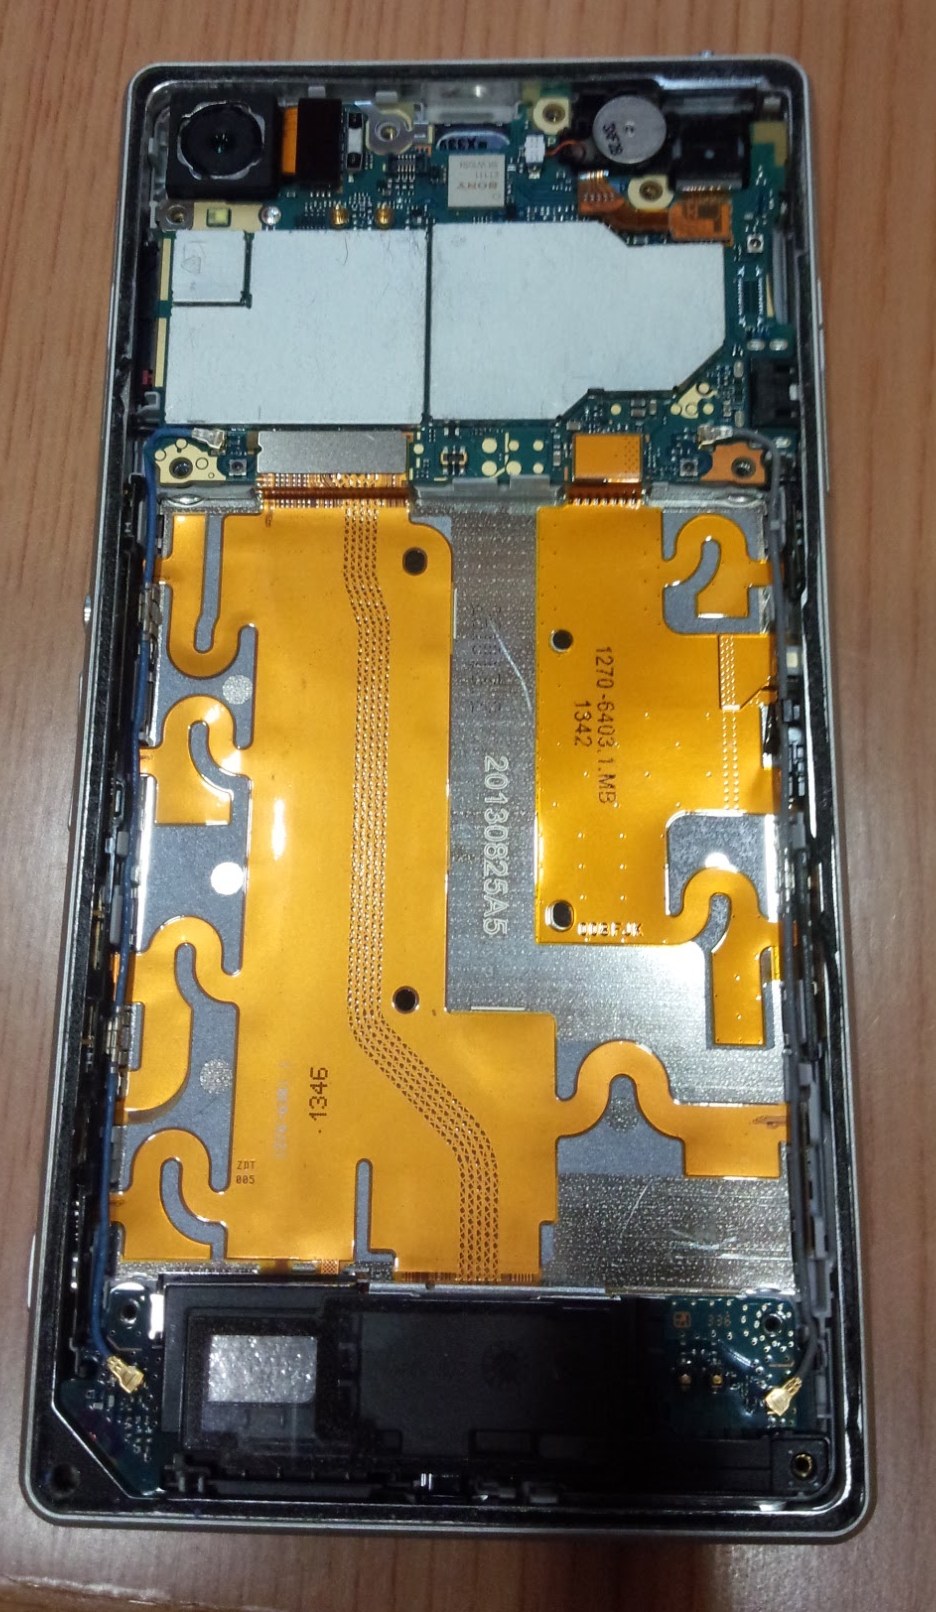 ドコモ Xperia Z1 So 01fの電池交換を自分でやってみる あとサブ機としての使い道とか エスナビ 子育て親による安くて使えるスマホや便利なグッズの紹介